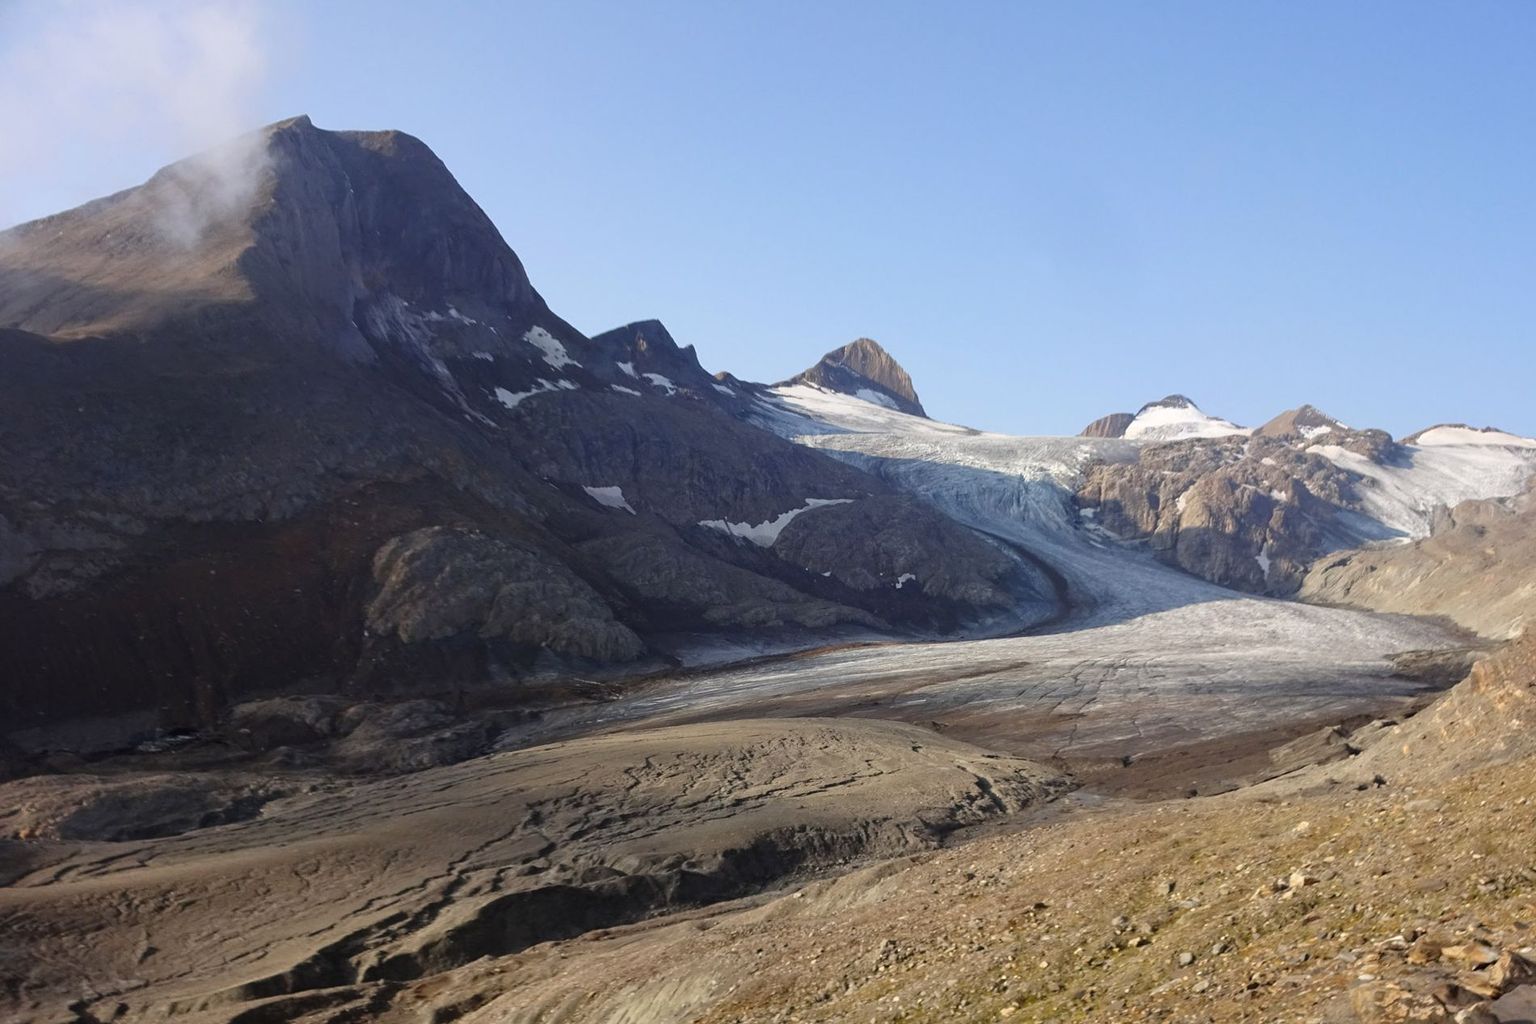 Seit Jahren verliert der Griesgletscher (VS) so schnell an Masse wie kaum ein anderer Gletscher in der Schweiz. Seine Zunge ist dünn und dreckig geworden, was die Schmelze weiter beschleunigt.